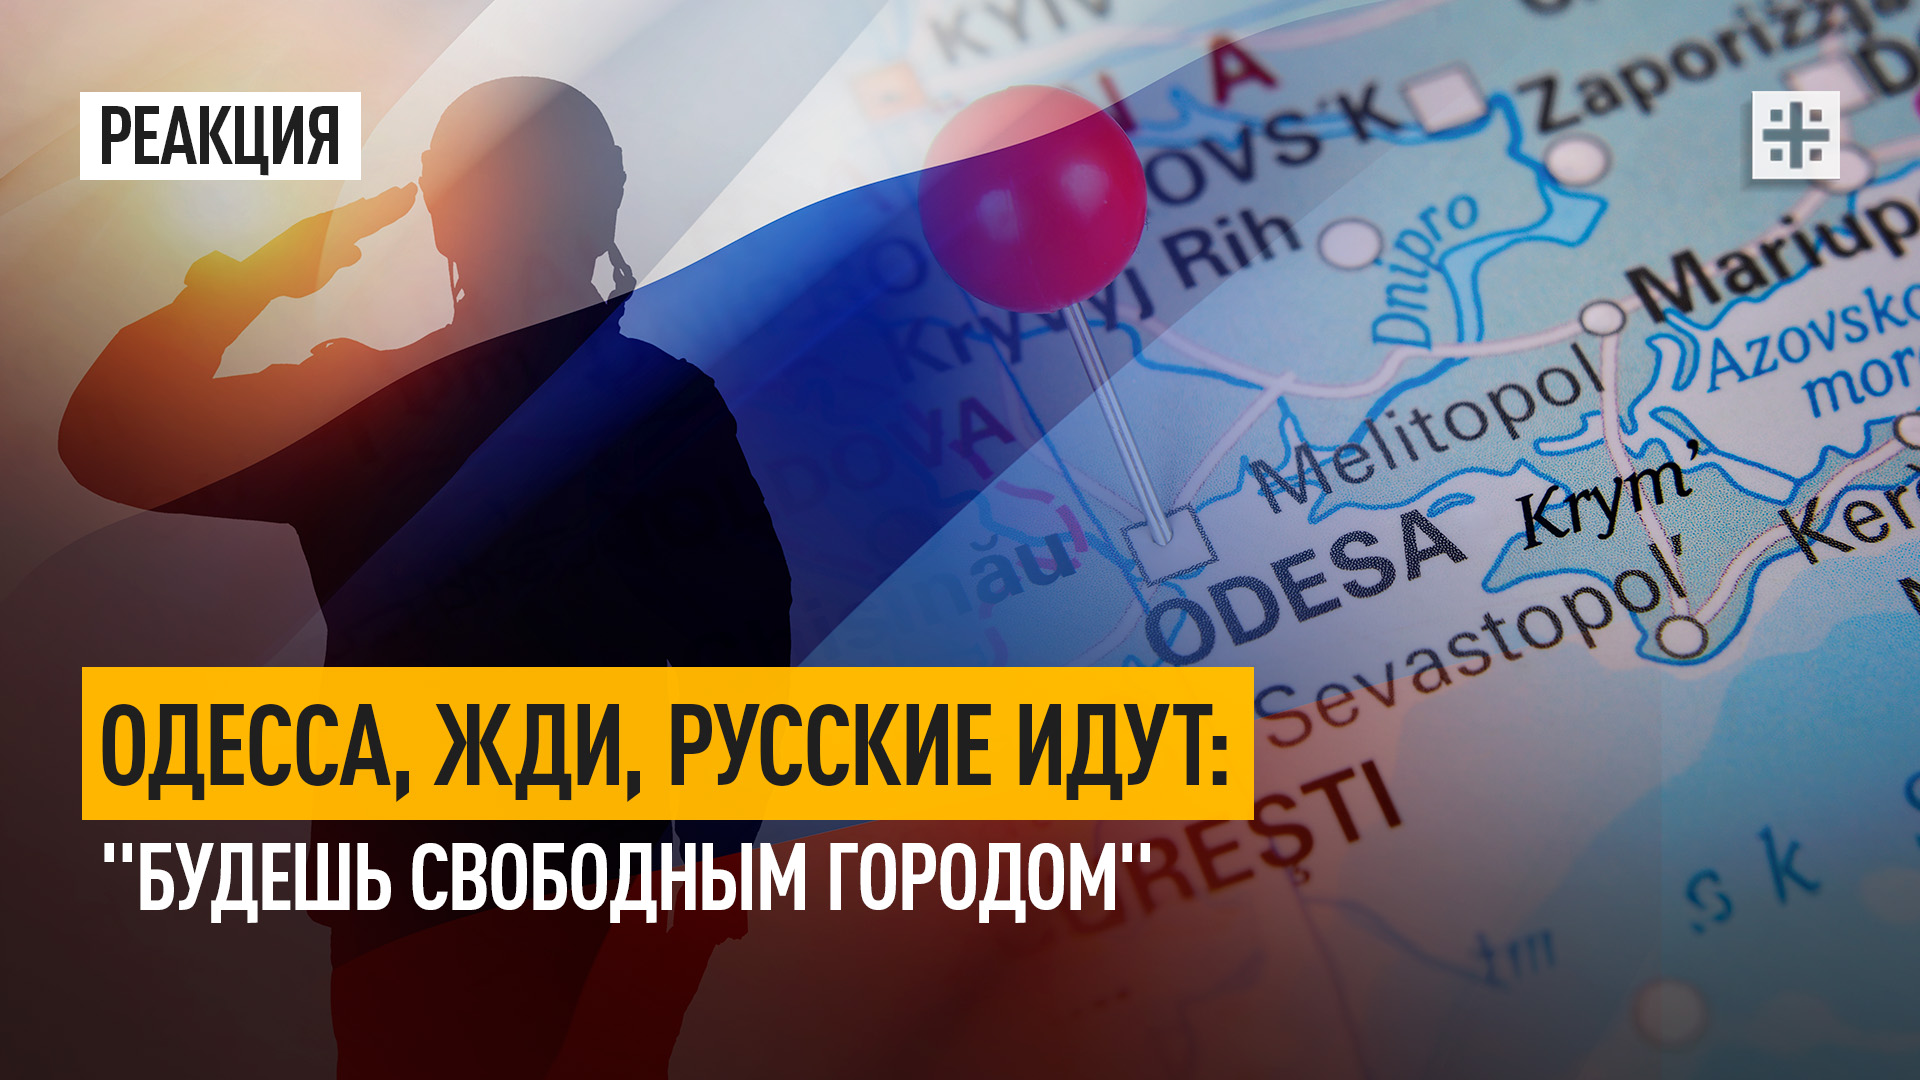 Одесса, жди, русские идут: "Будешь свободным городом"